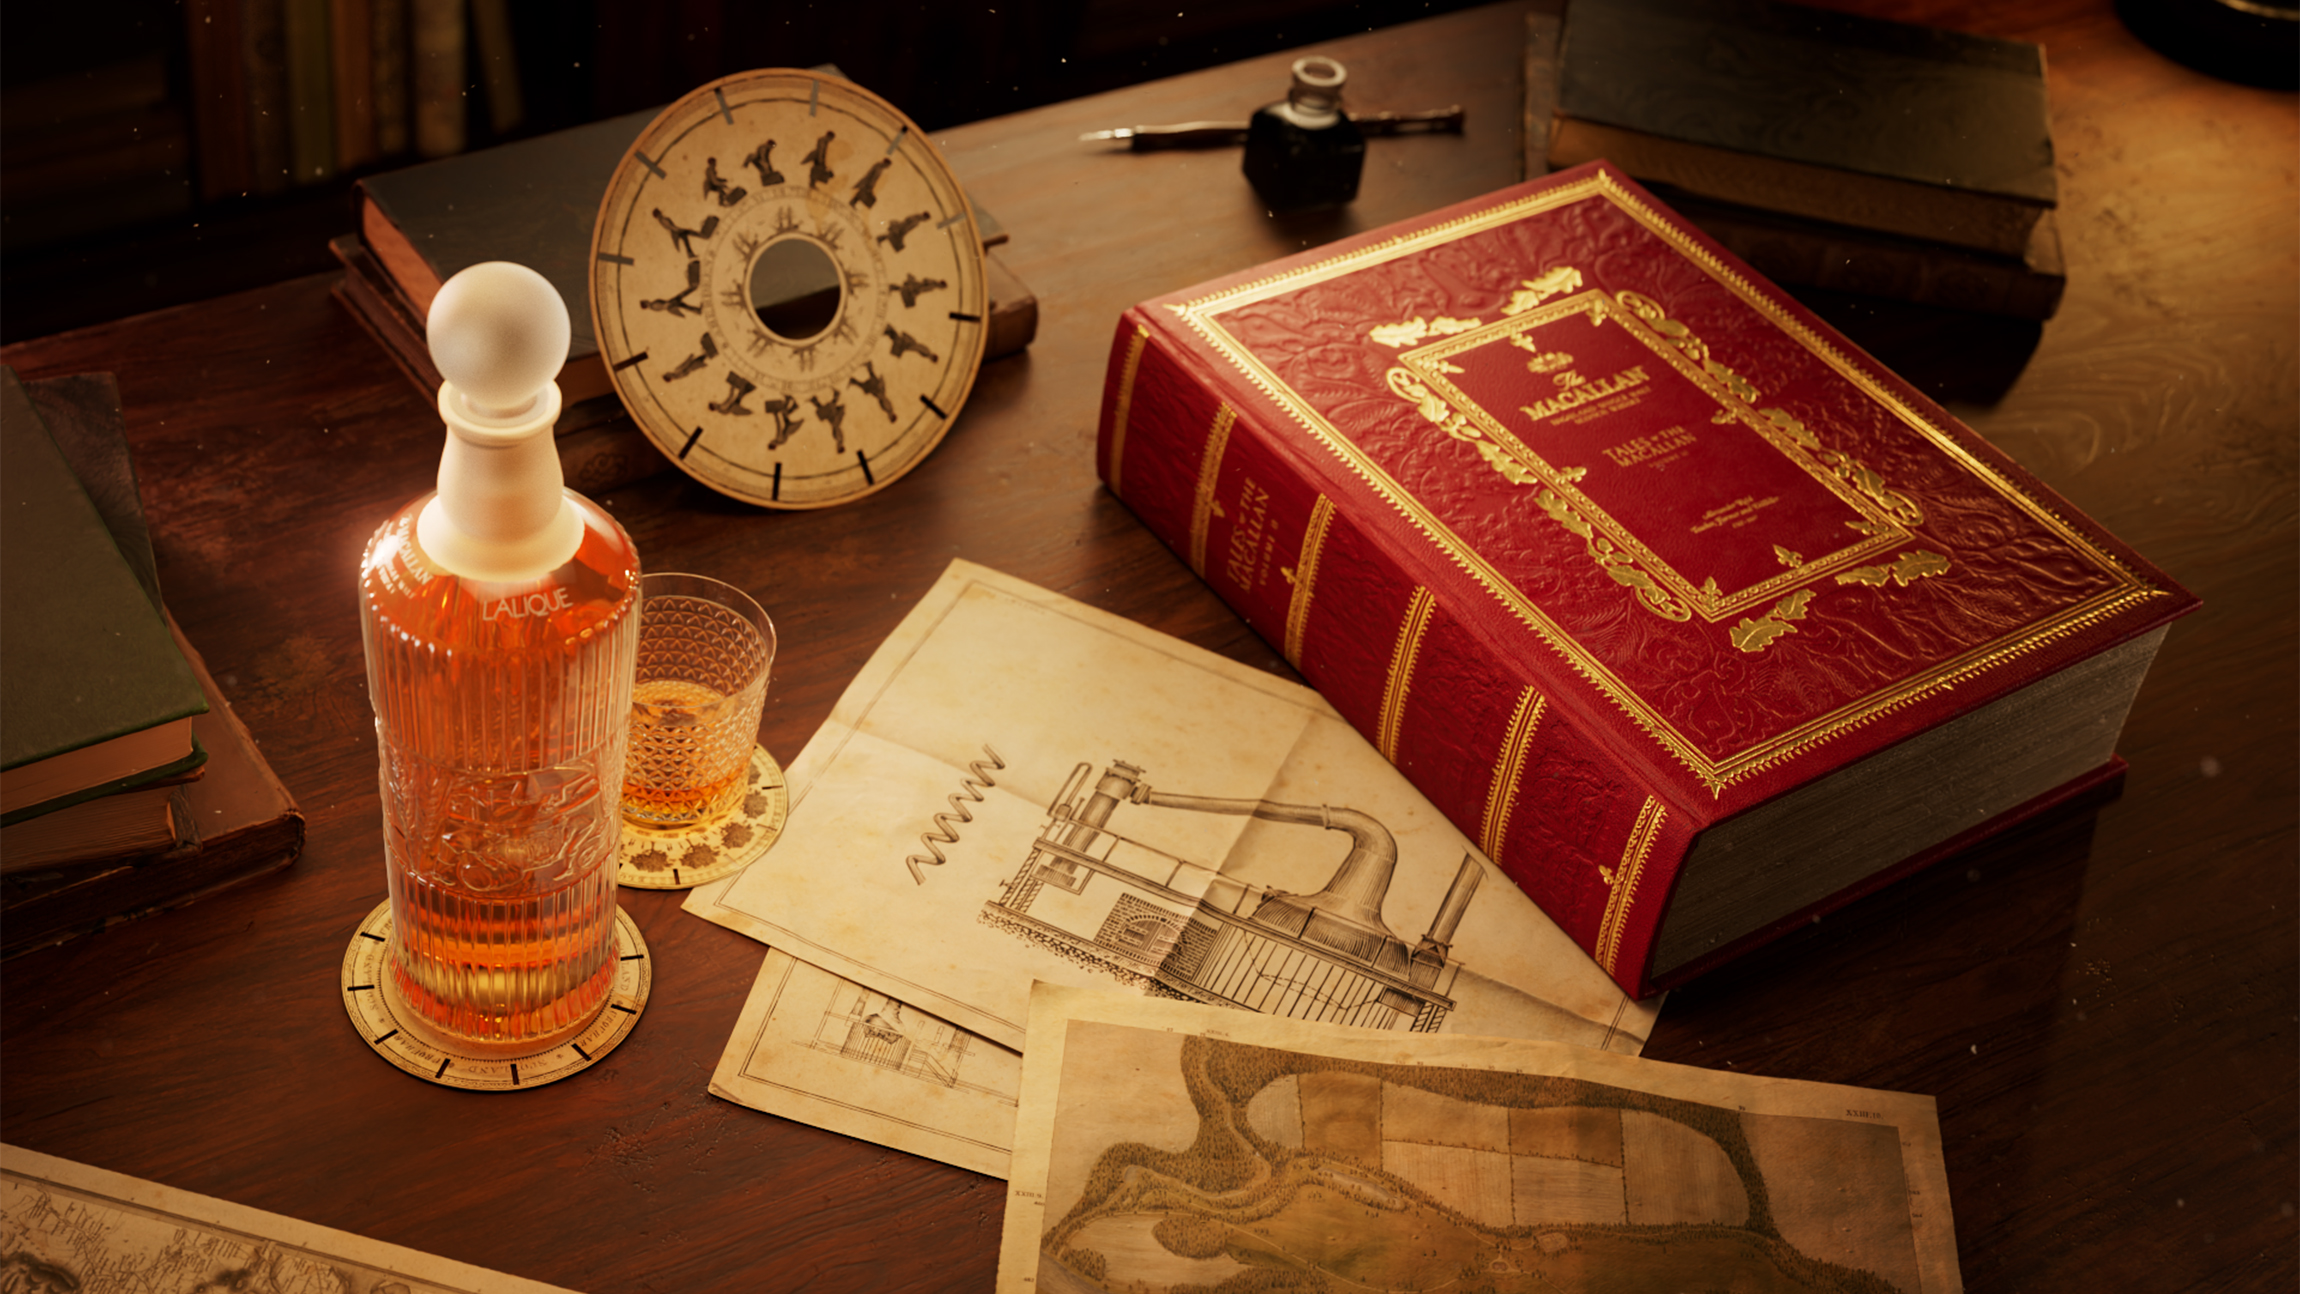 麦卡伦传奇系列第二卷瞩目发布  致敬传奇开创先驱   礼赞匠心制酒传承图片1